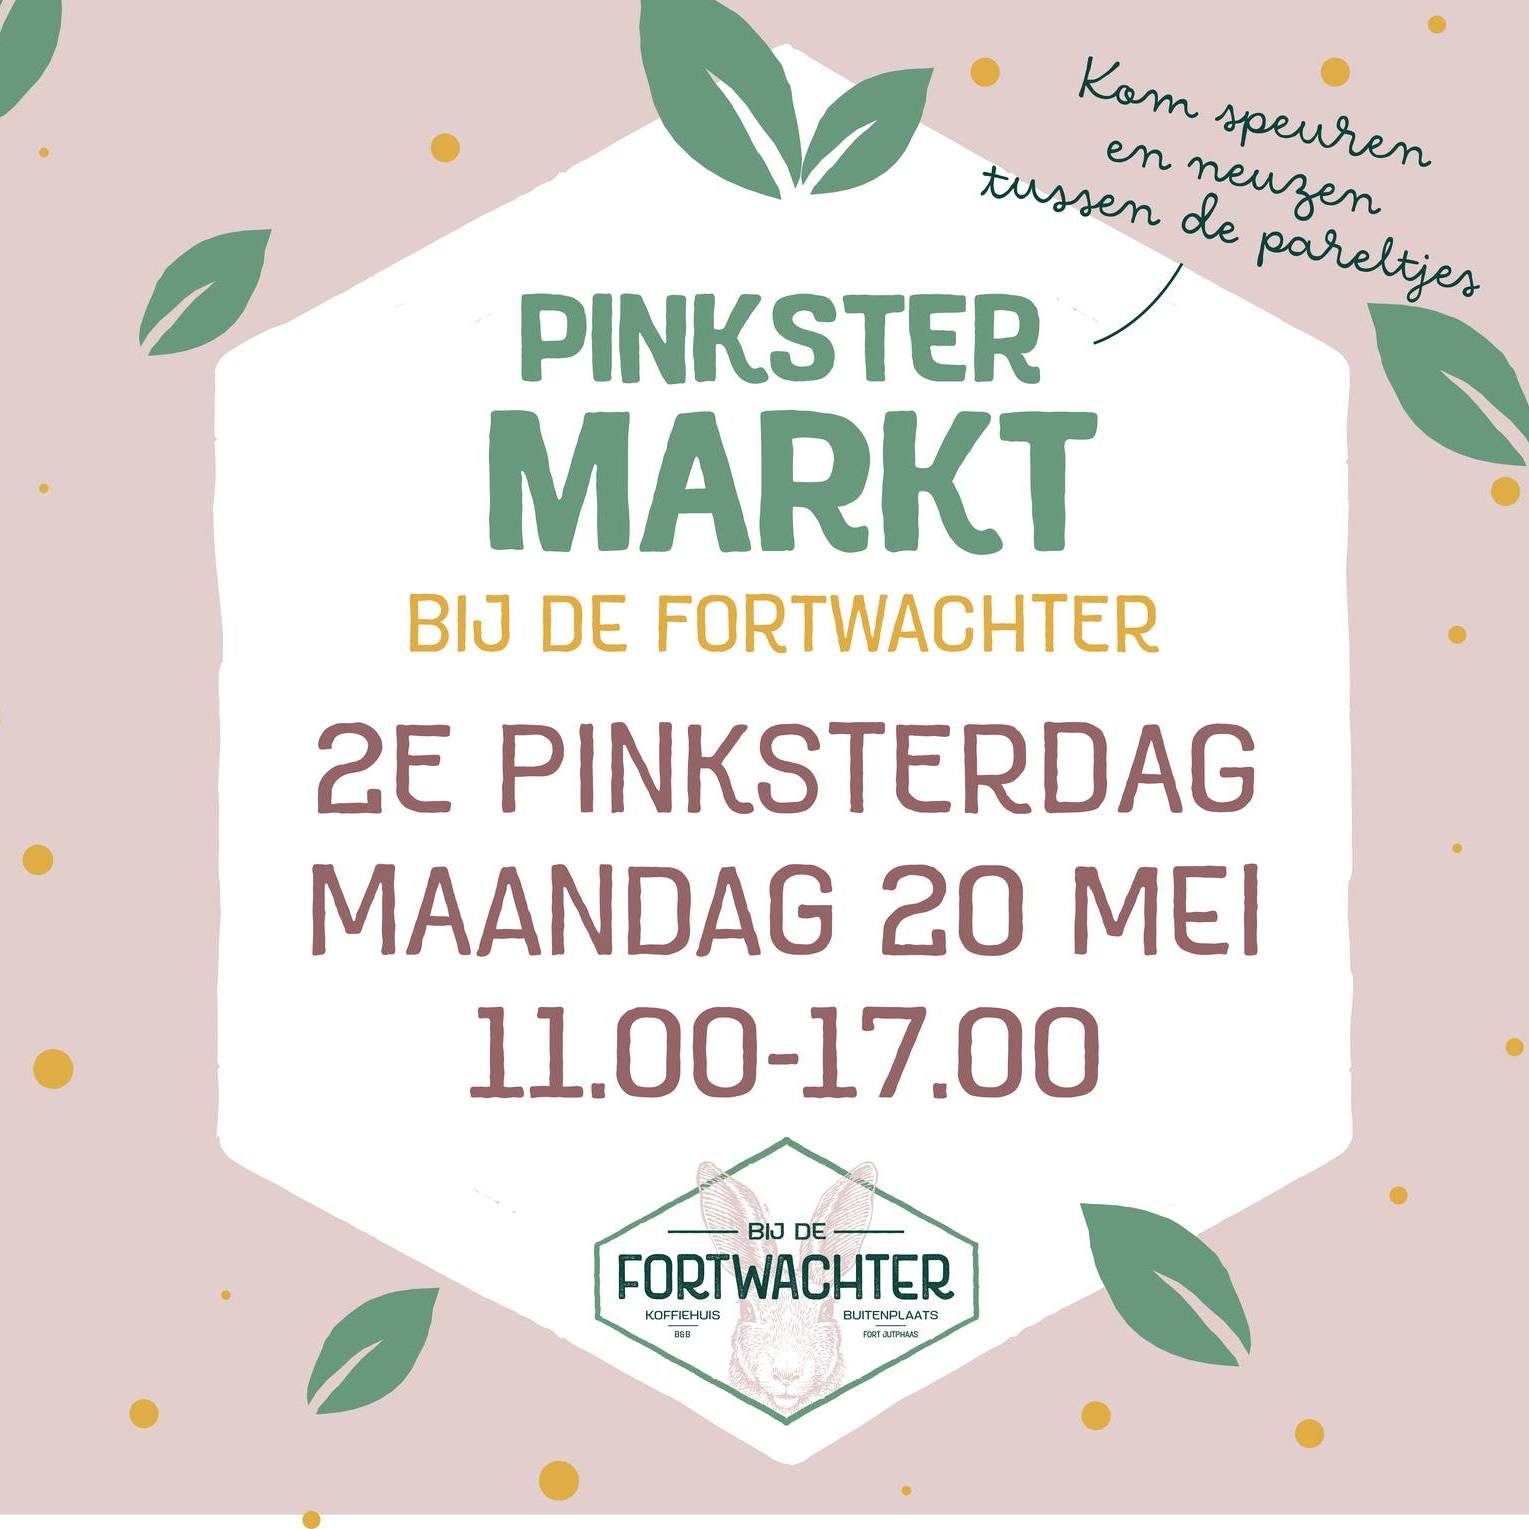 https://www.nieuwegeinsewijken.nl/batau-zuid/upload/afbeeldingen/pinkstermarkt-fortwachter.jpg